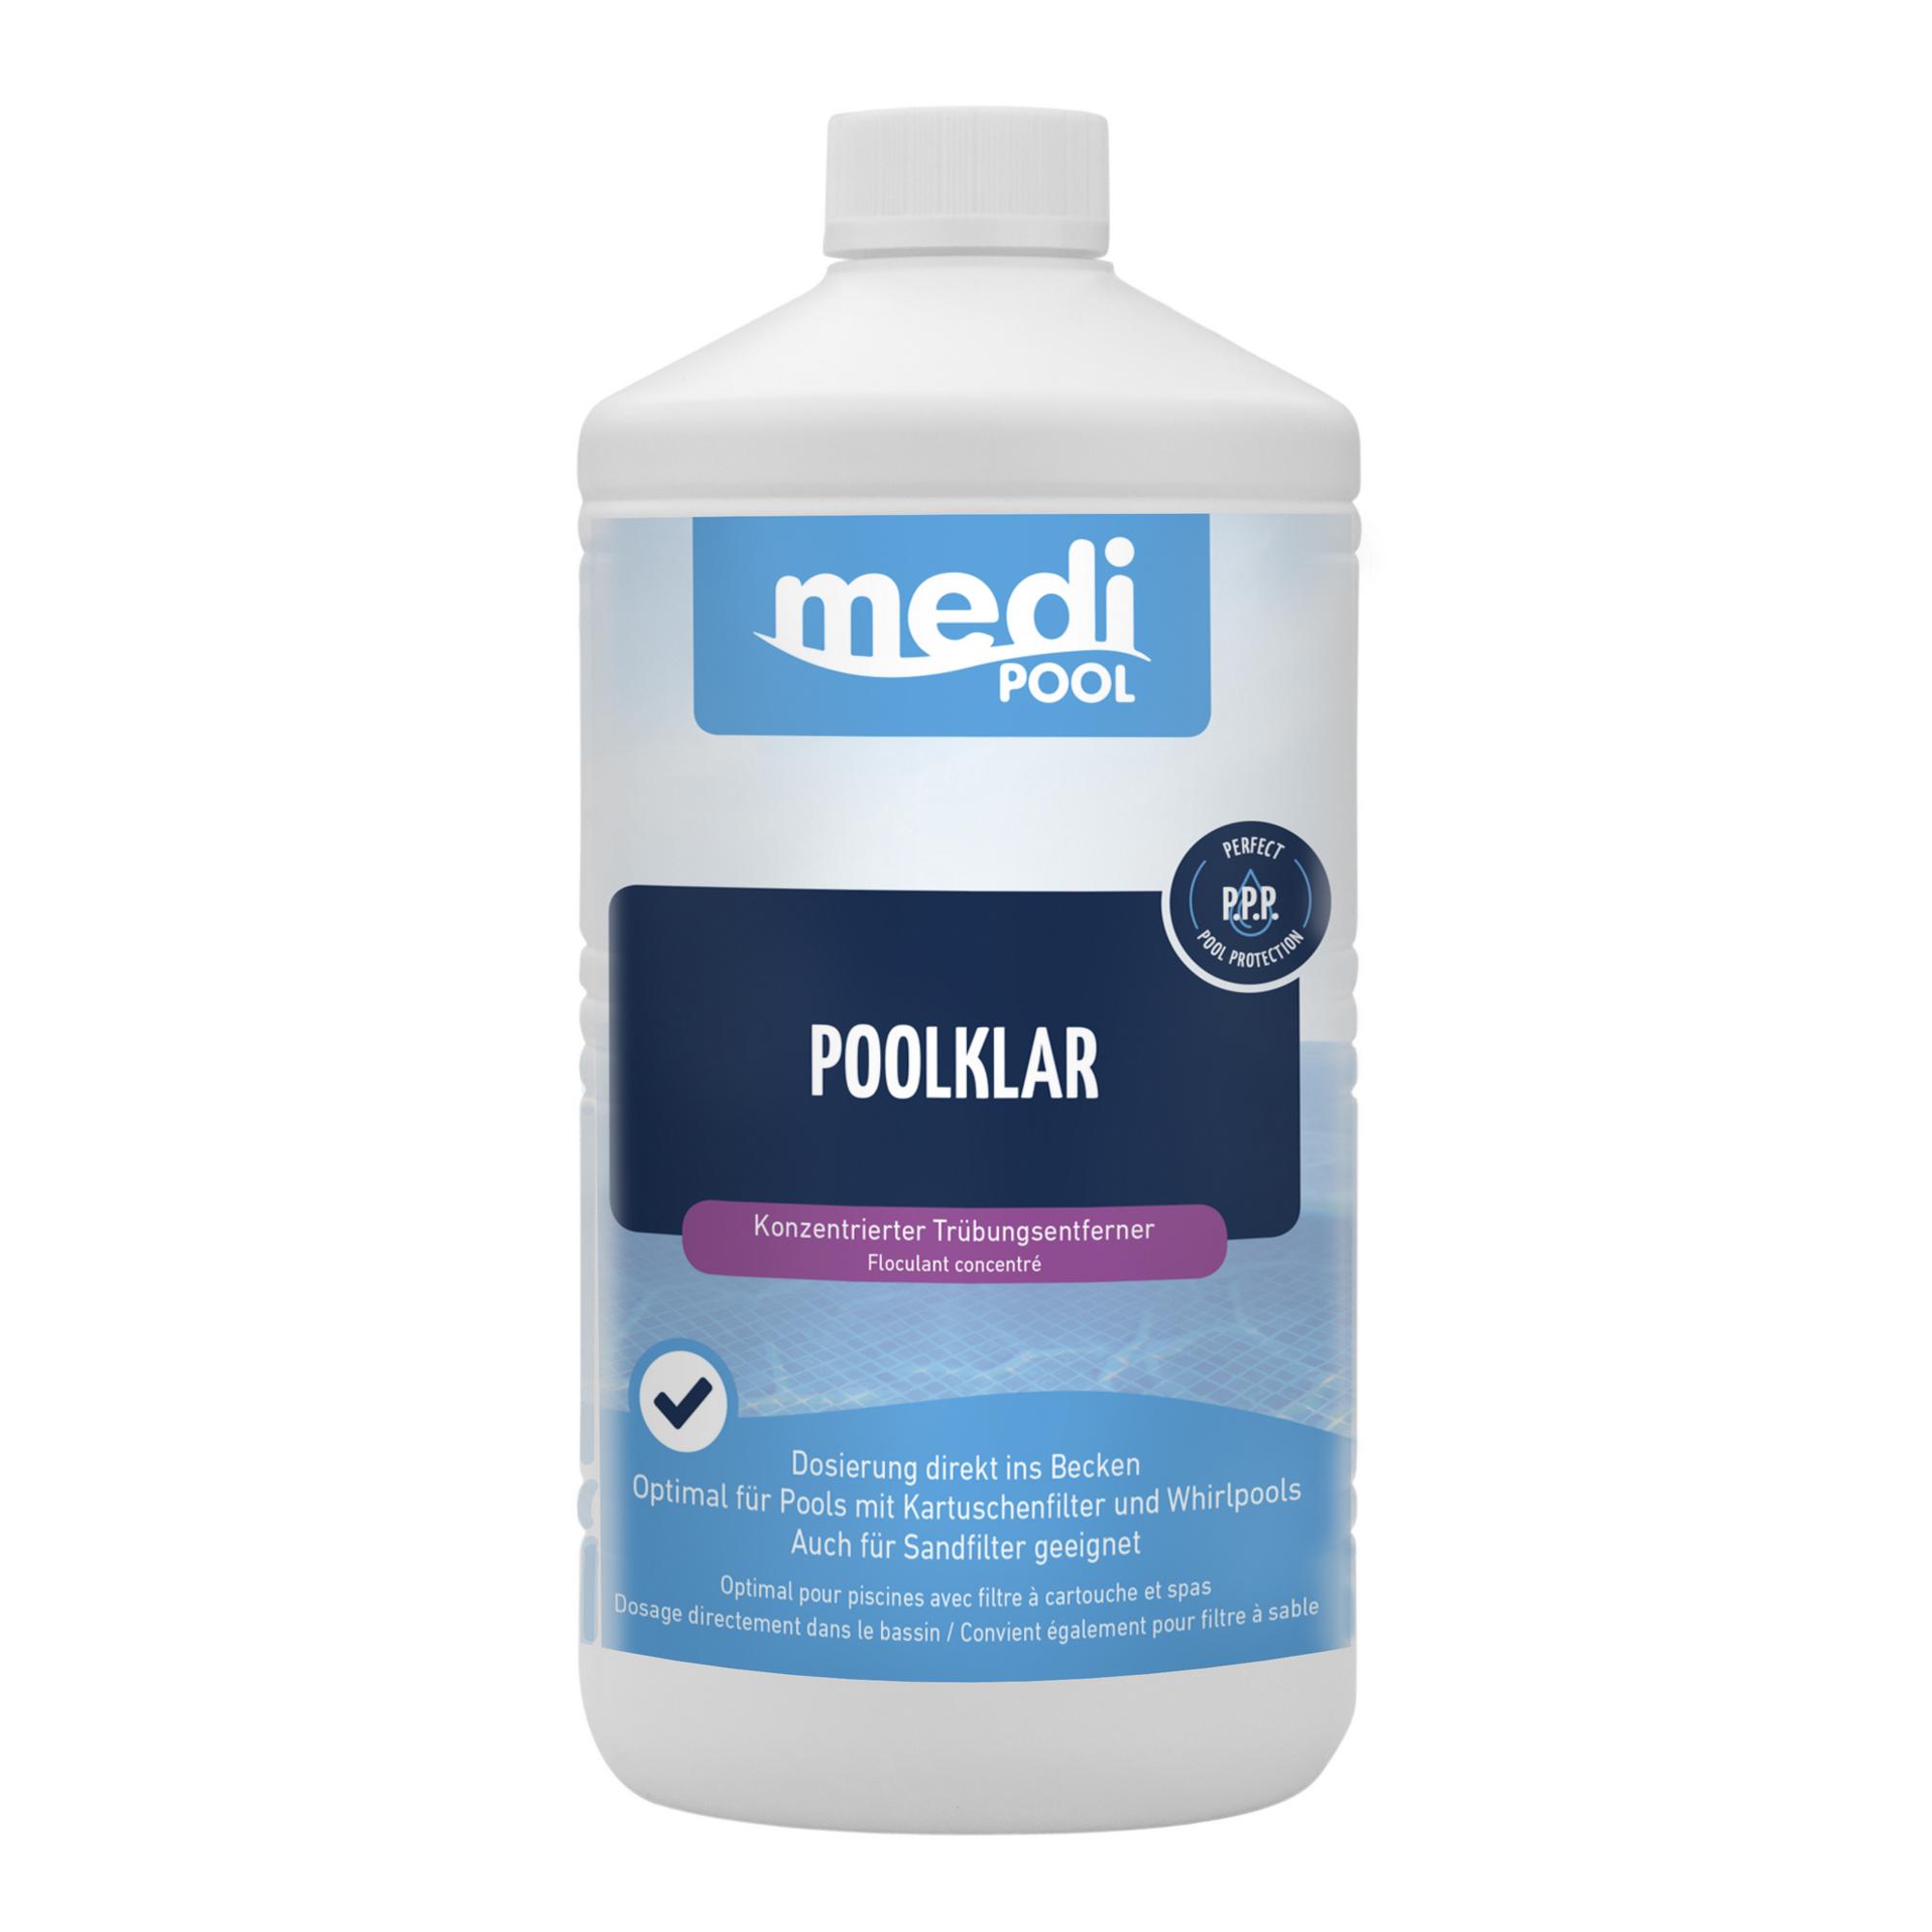 Poolklar-Konzentrat 1 Liter, für die Poolpflege + product picture